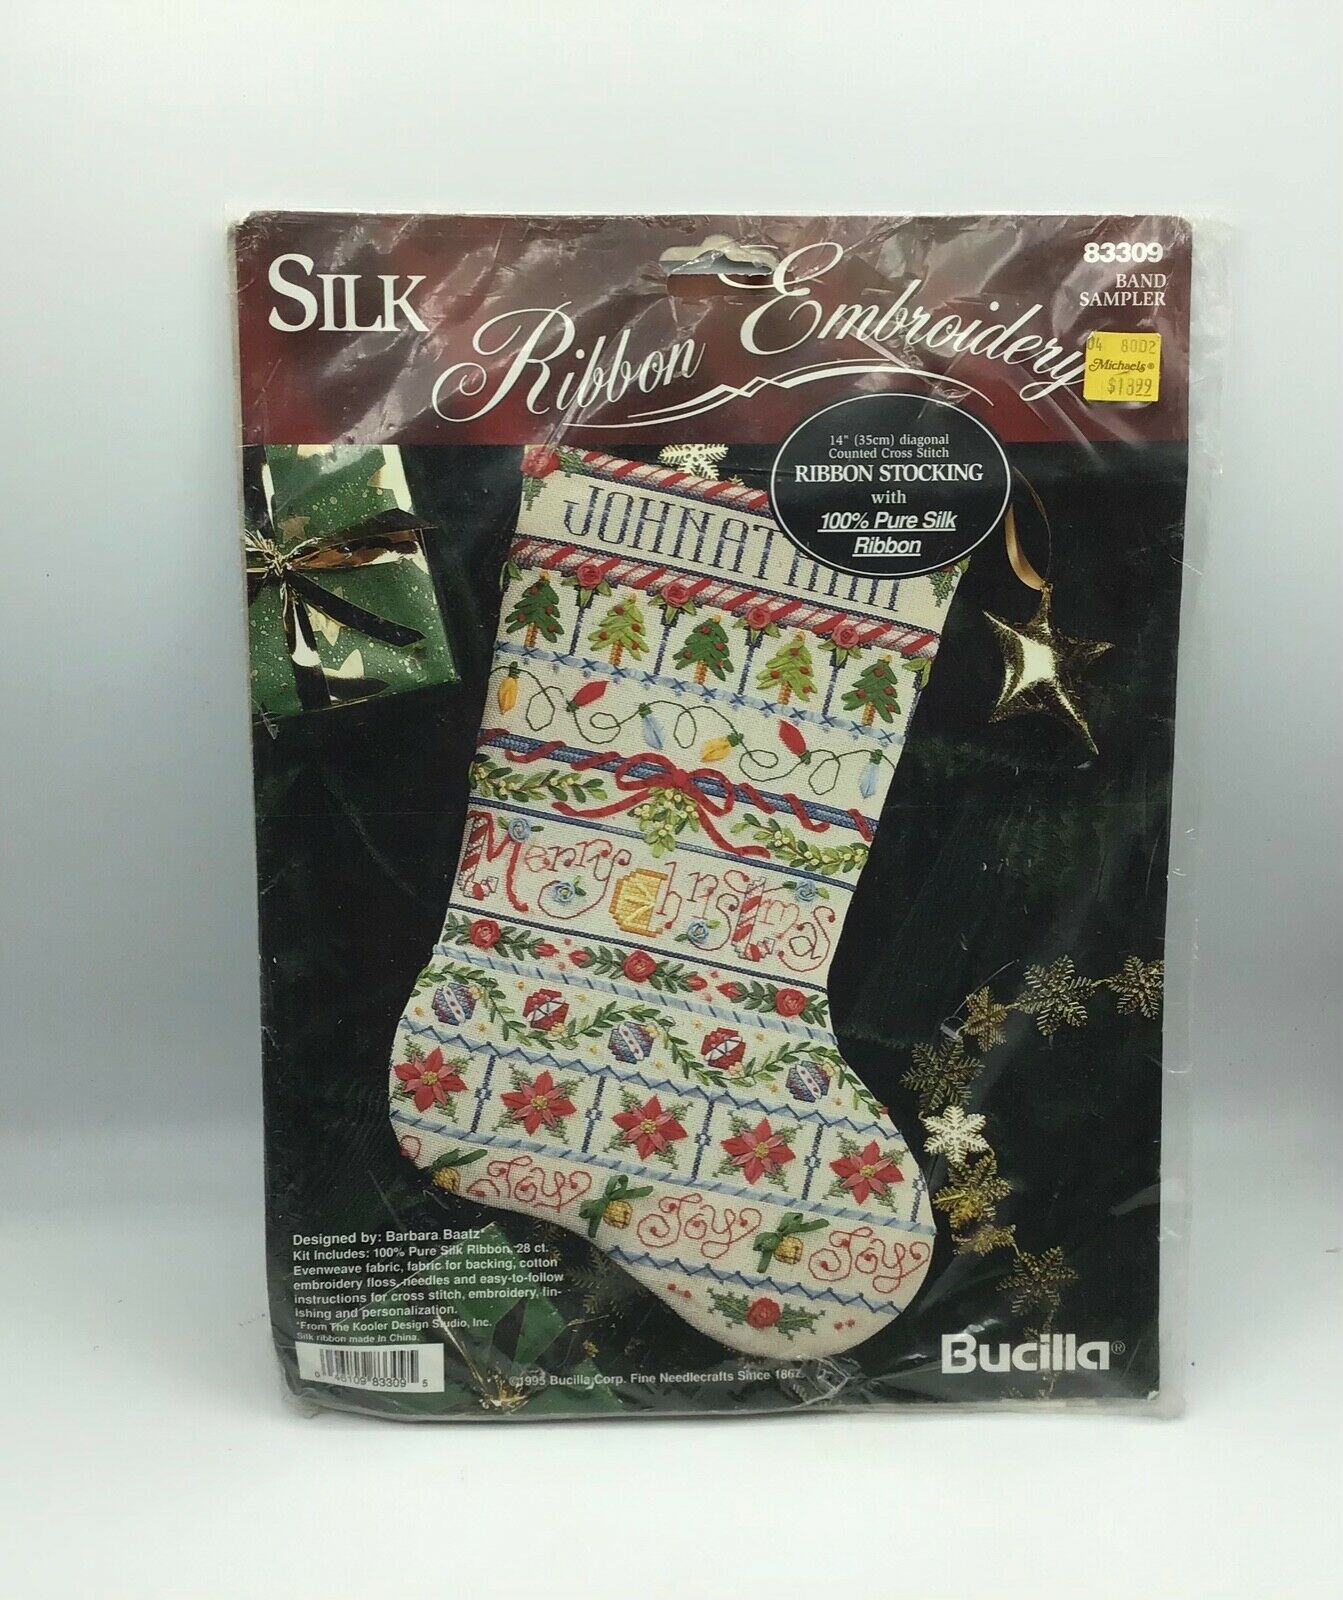 1995 Bucilla Counted Cross Stitch Silk Ribbon Embroidery Ribbon Stocking Kit New